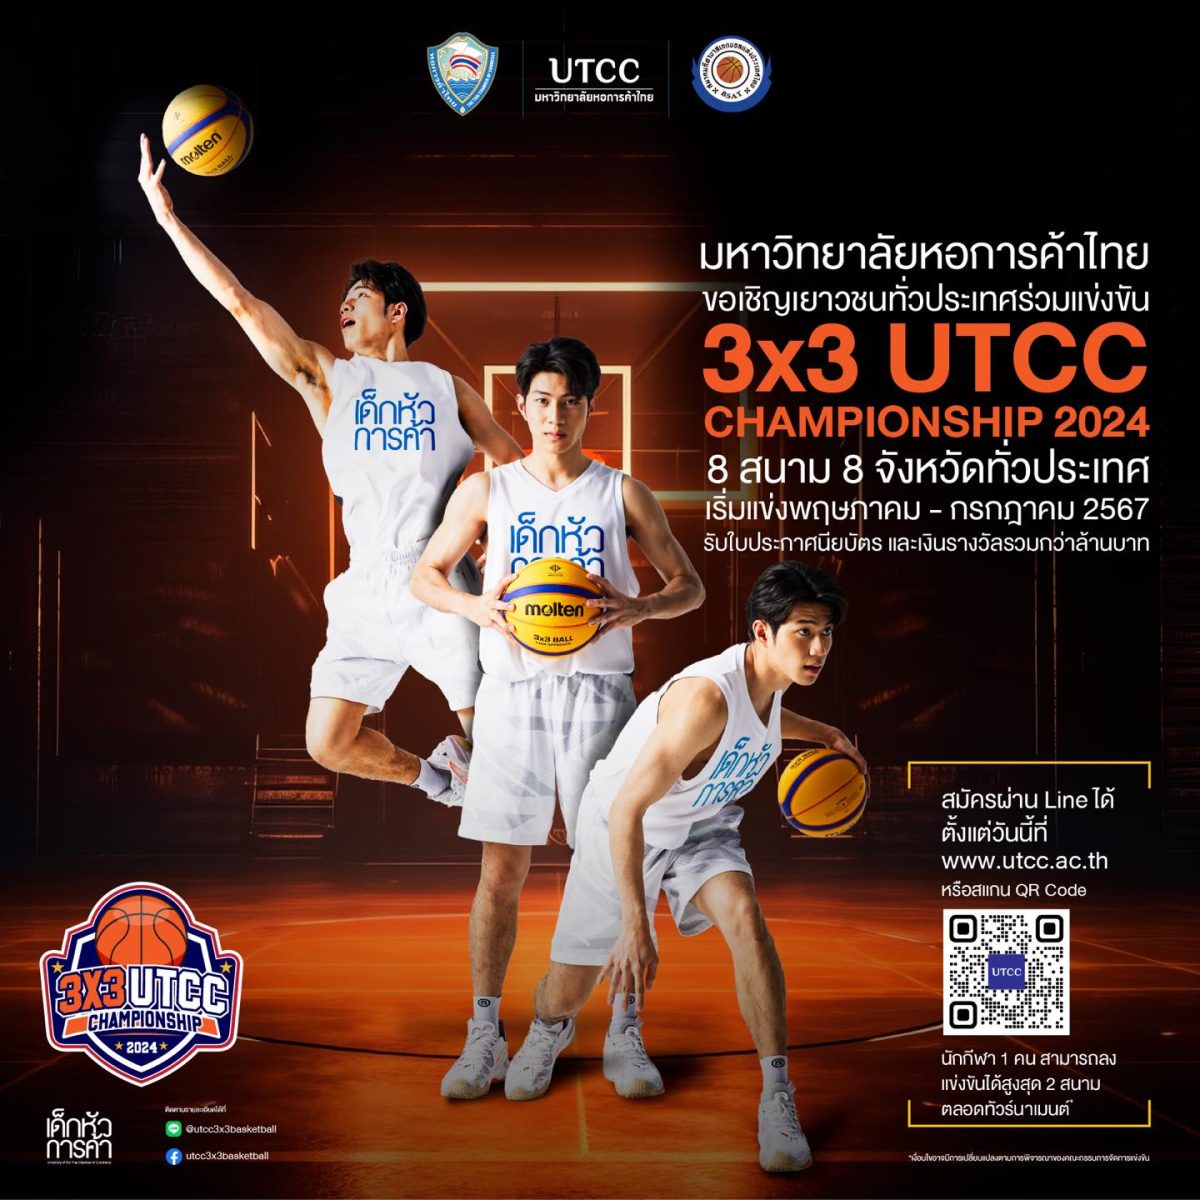 ม.หอการค้าไทย ผนึกพันธมิตรชั้นนำจัดแข่งบาสเกตบอลเพื่อวัยรุ่น 3x3 UTCC Championship 2024 ชิงถ้วยและเงินรางวัล 3